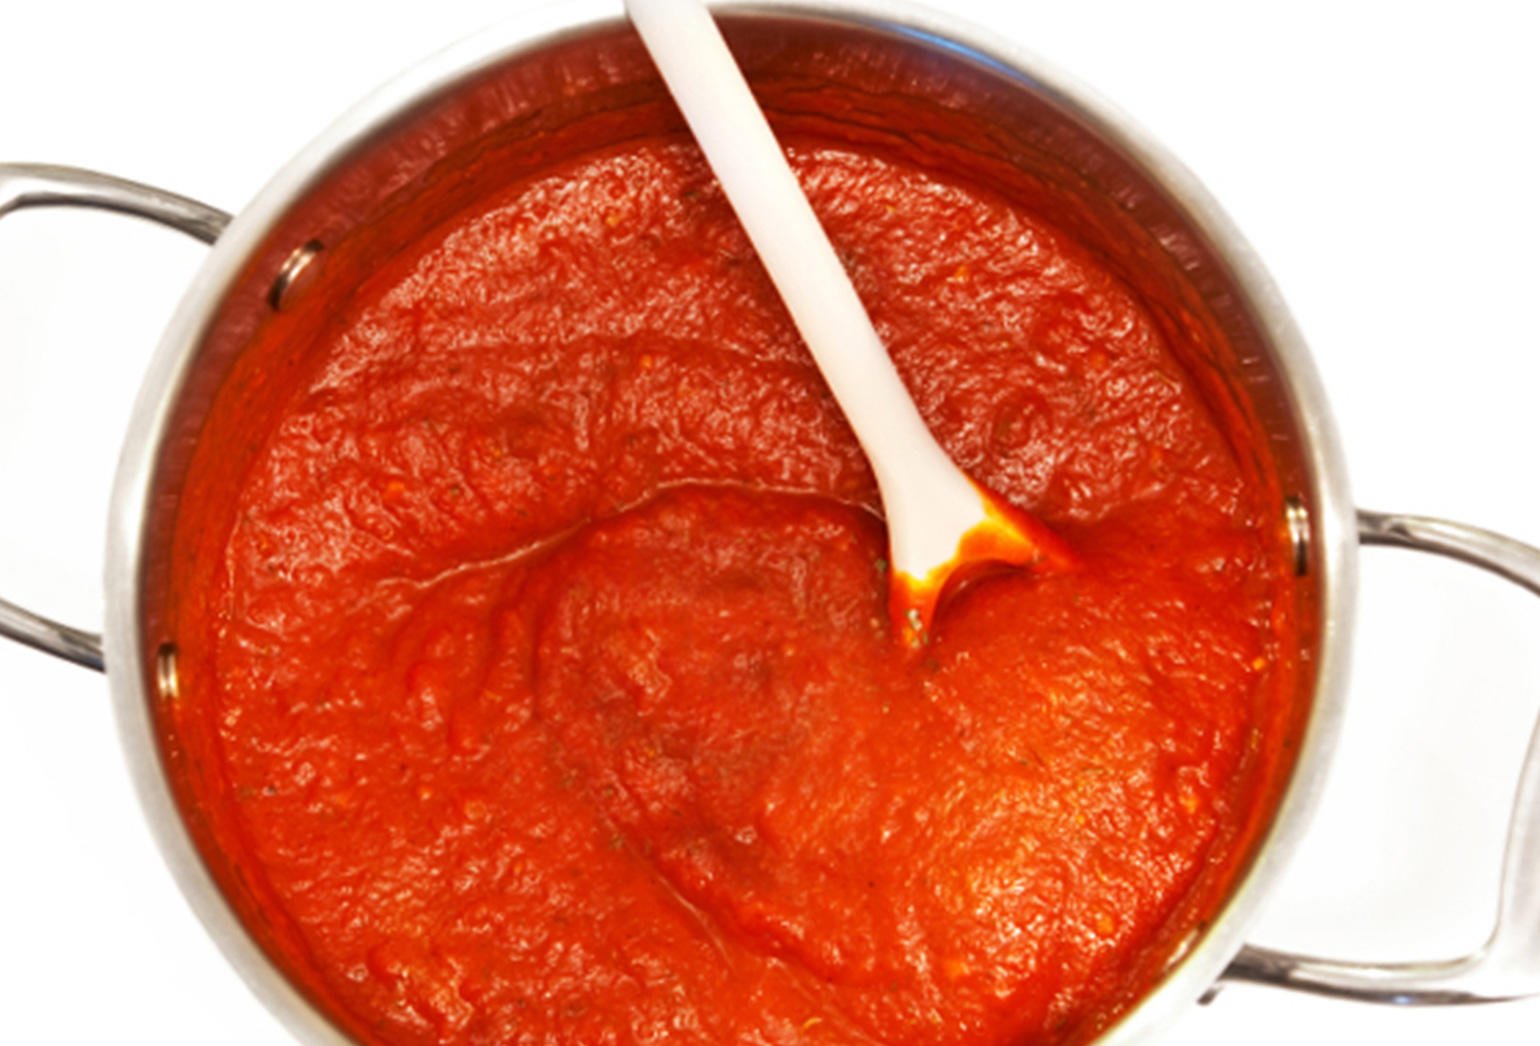 томаты для соуса для пиццы фото 95